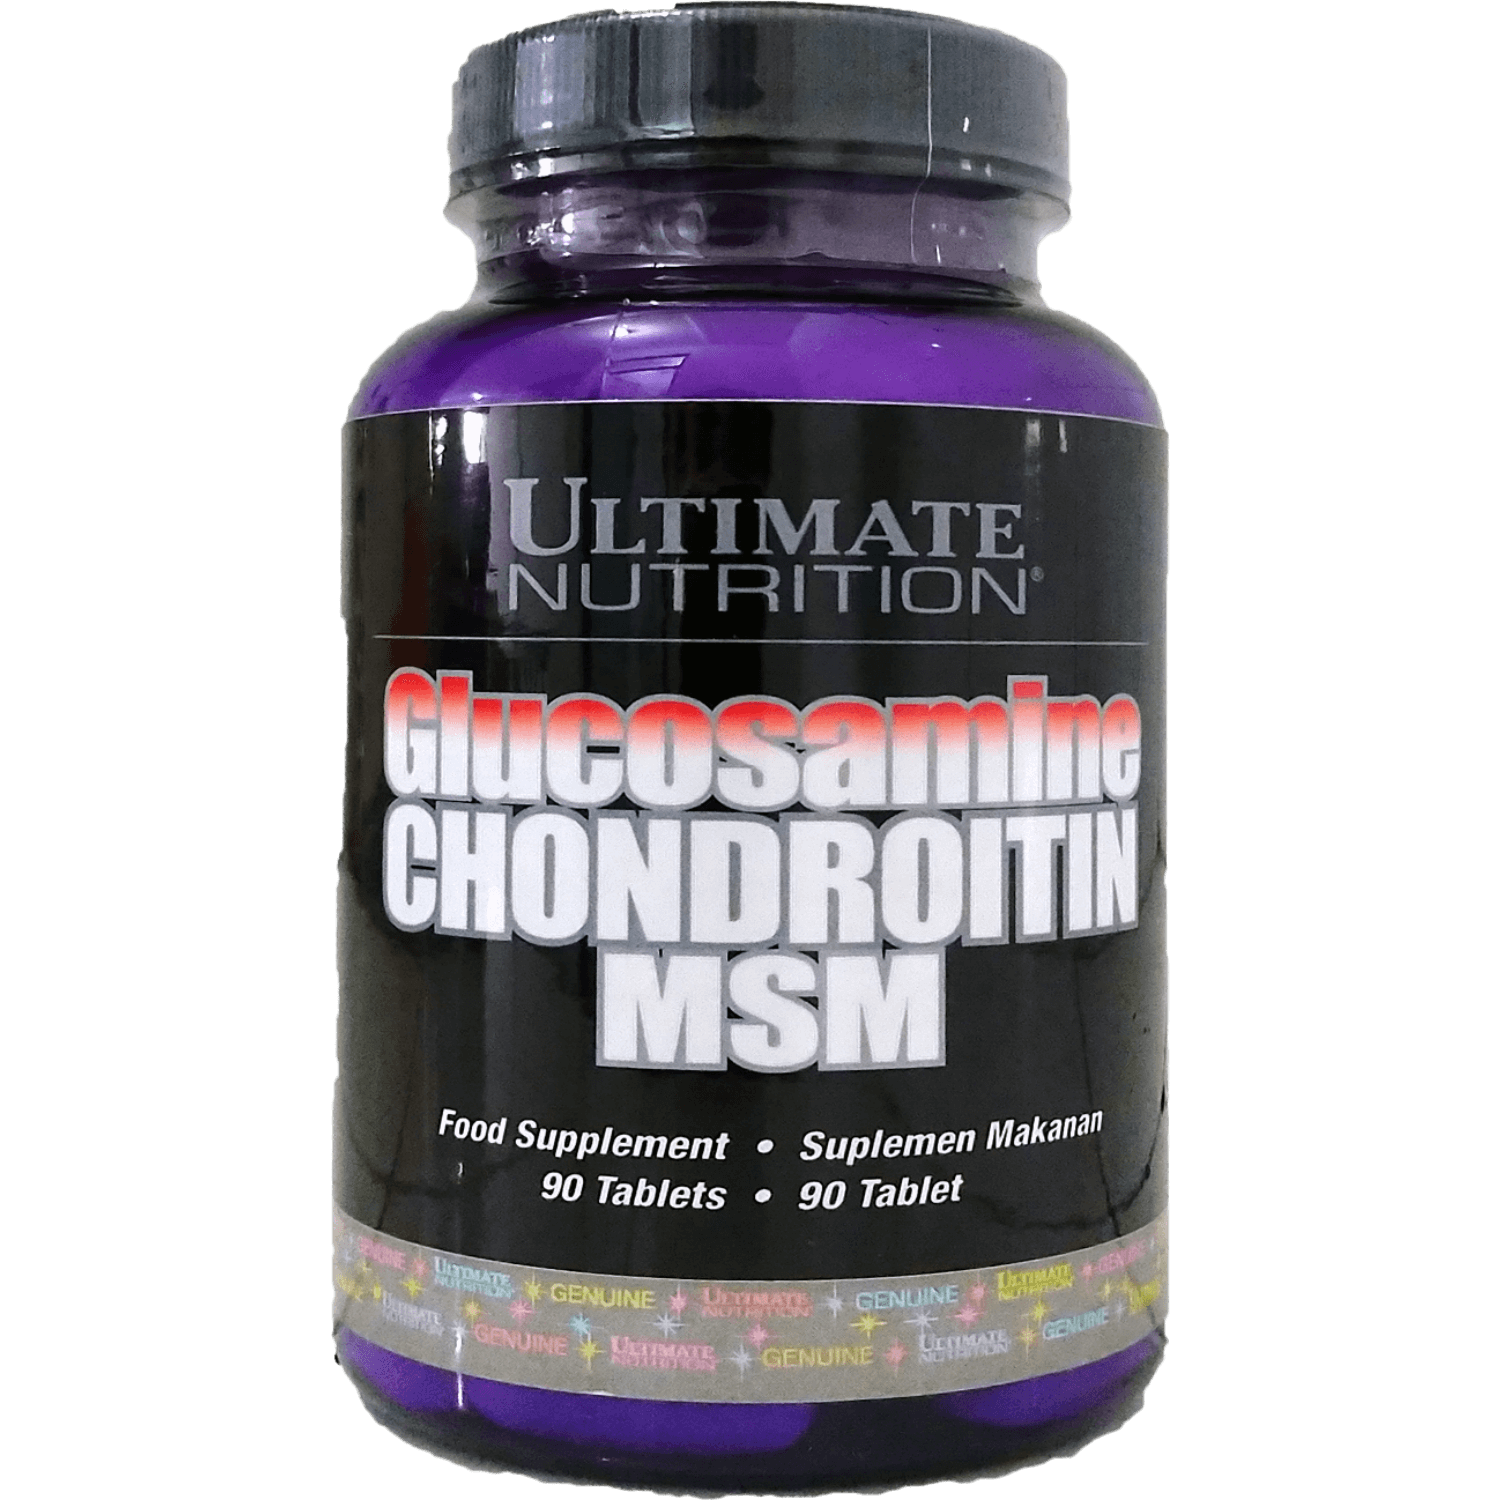 Glucosamine chondroitin msm